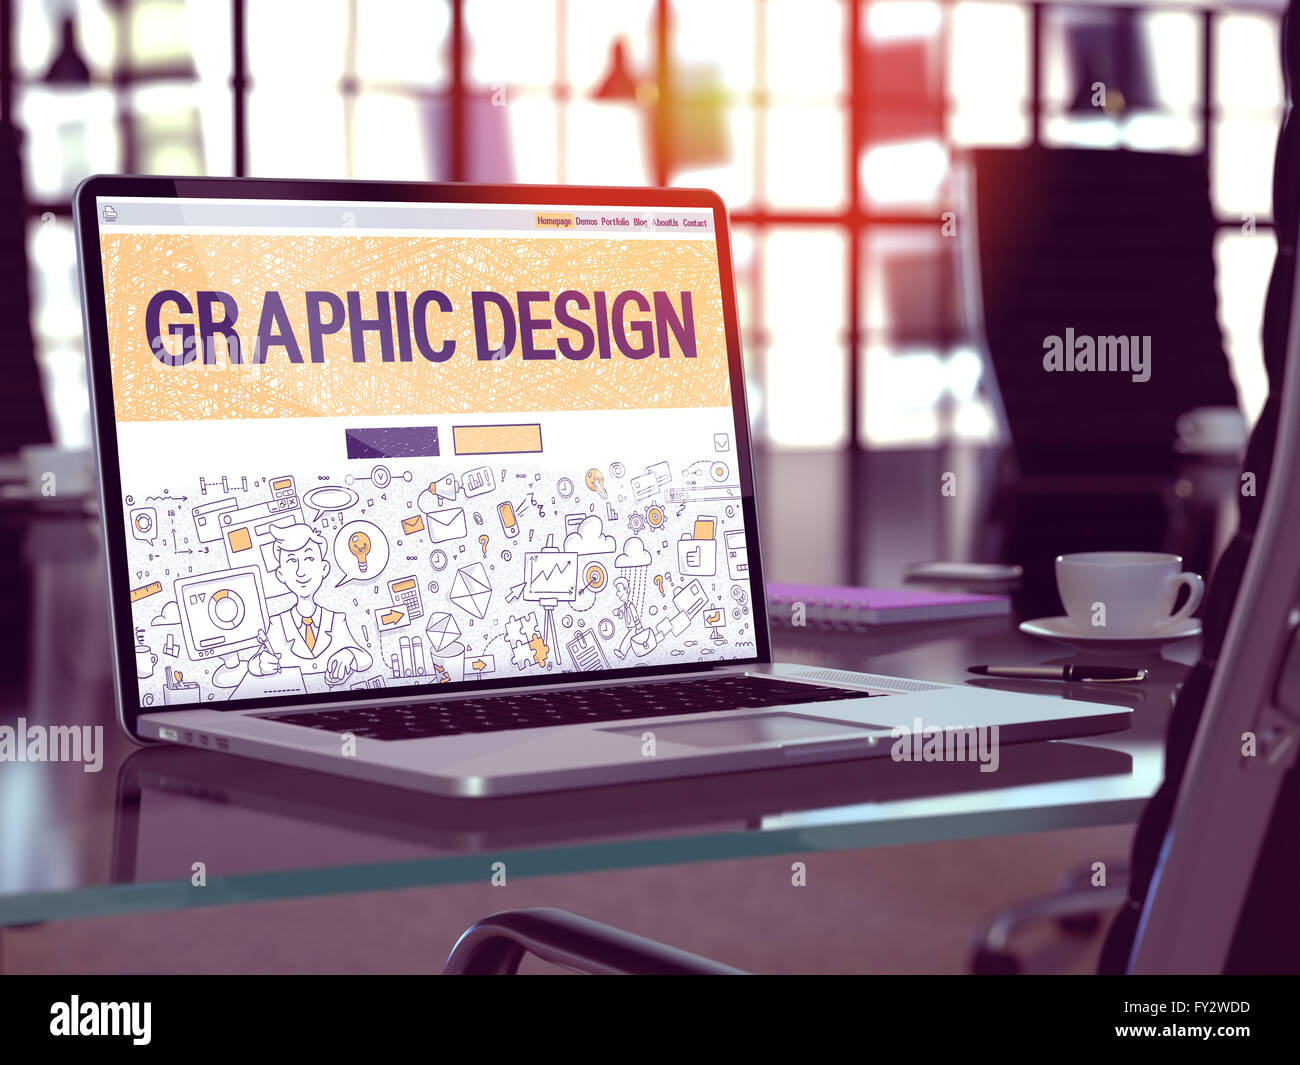 Schermo portatile con Graphic Design Concept. Foto Stock